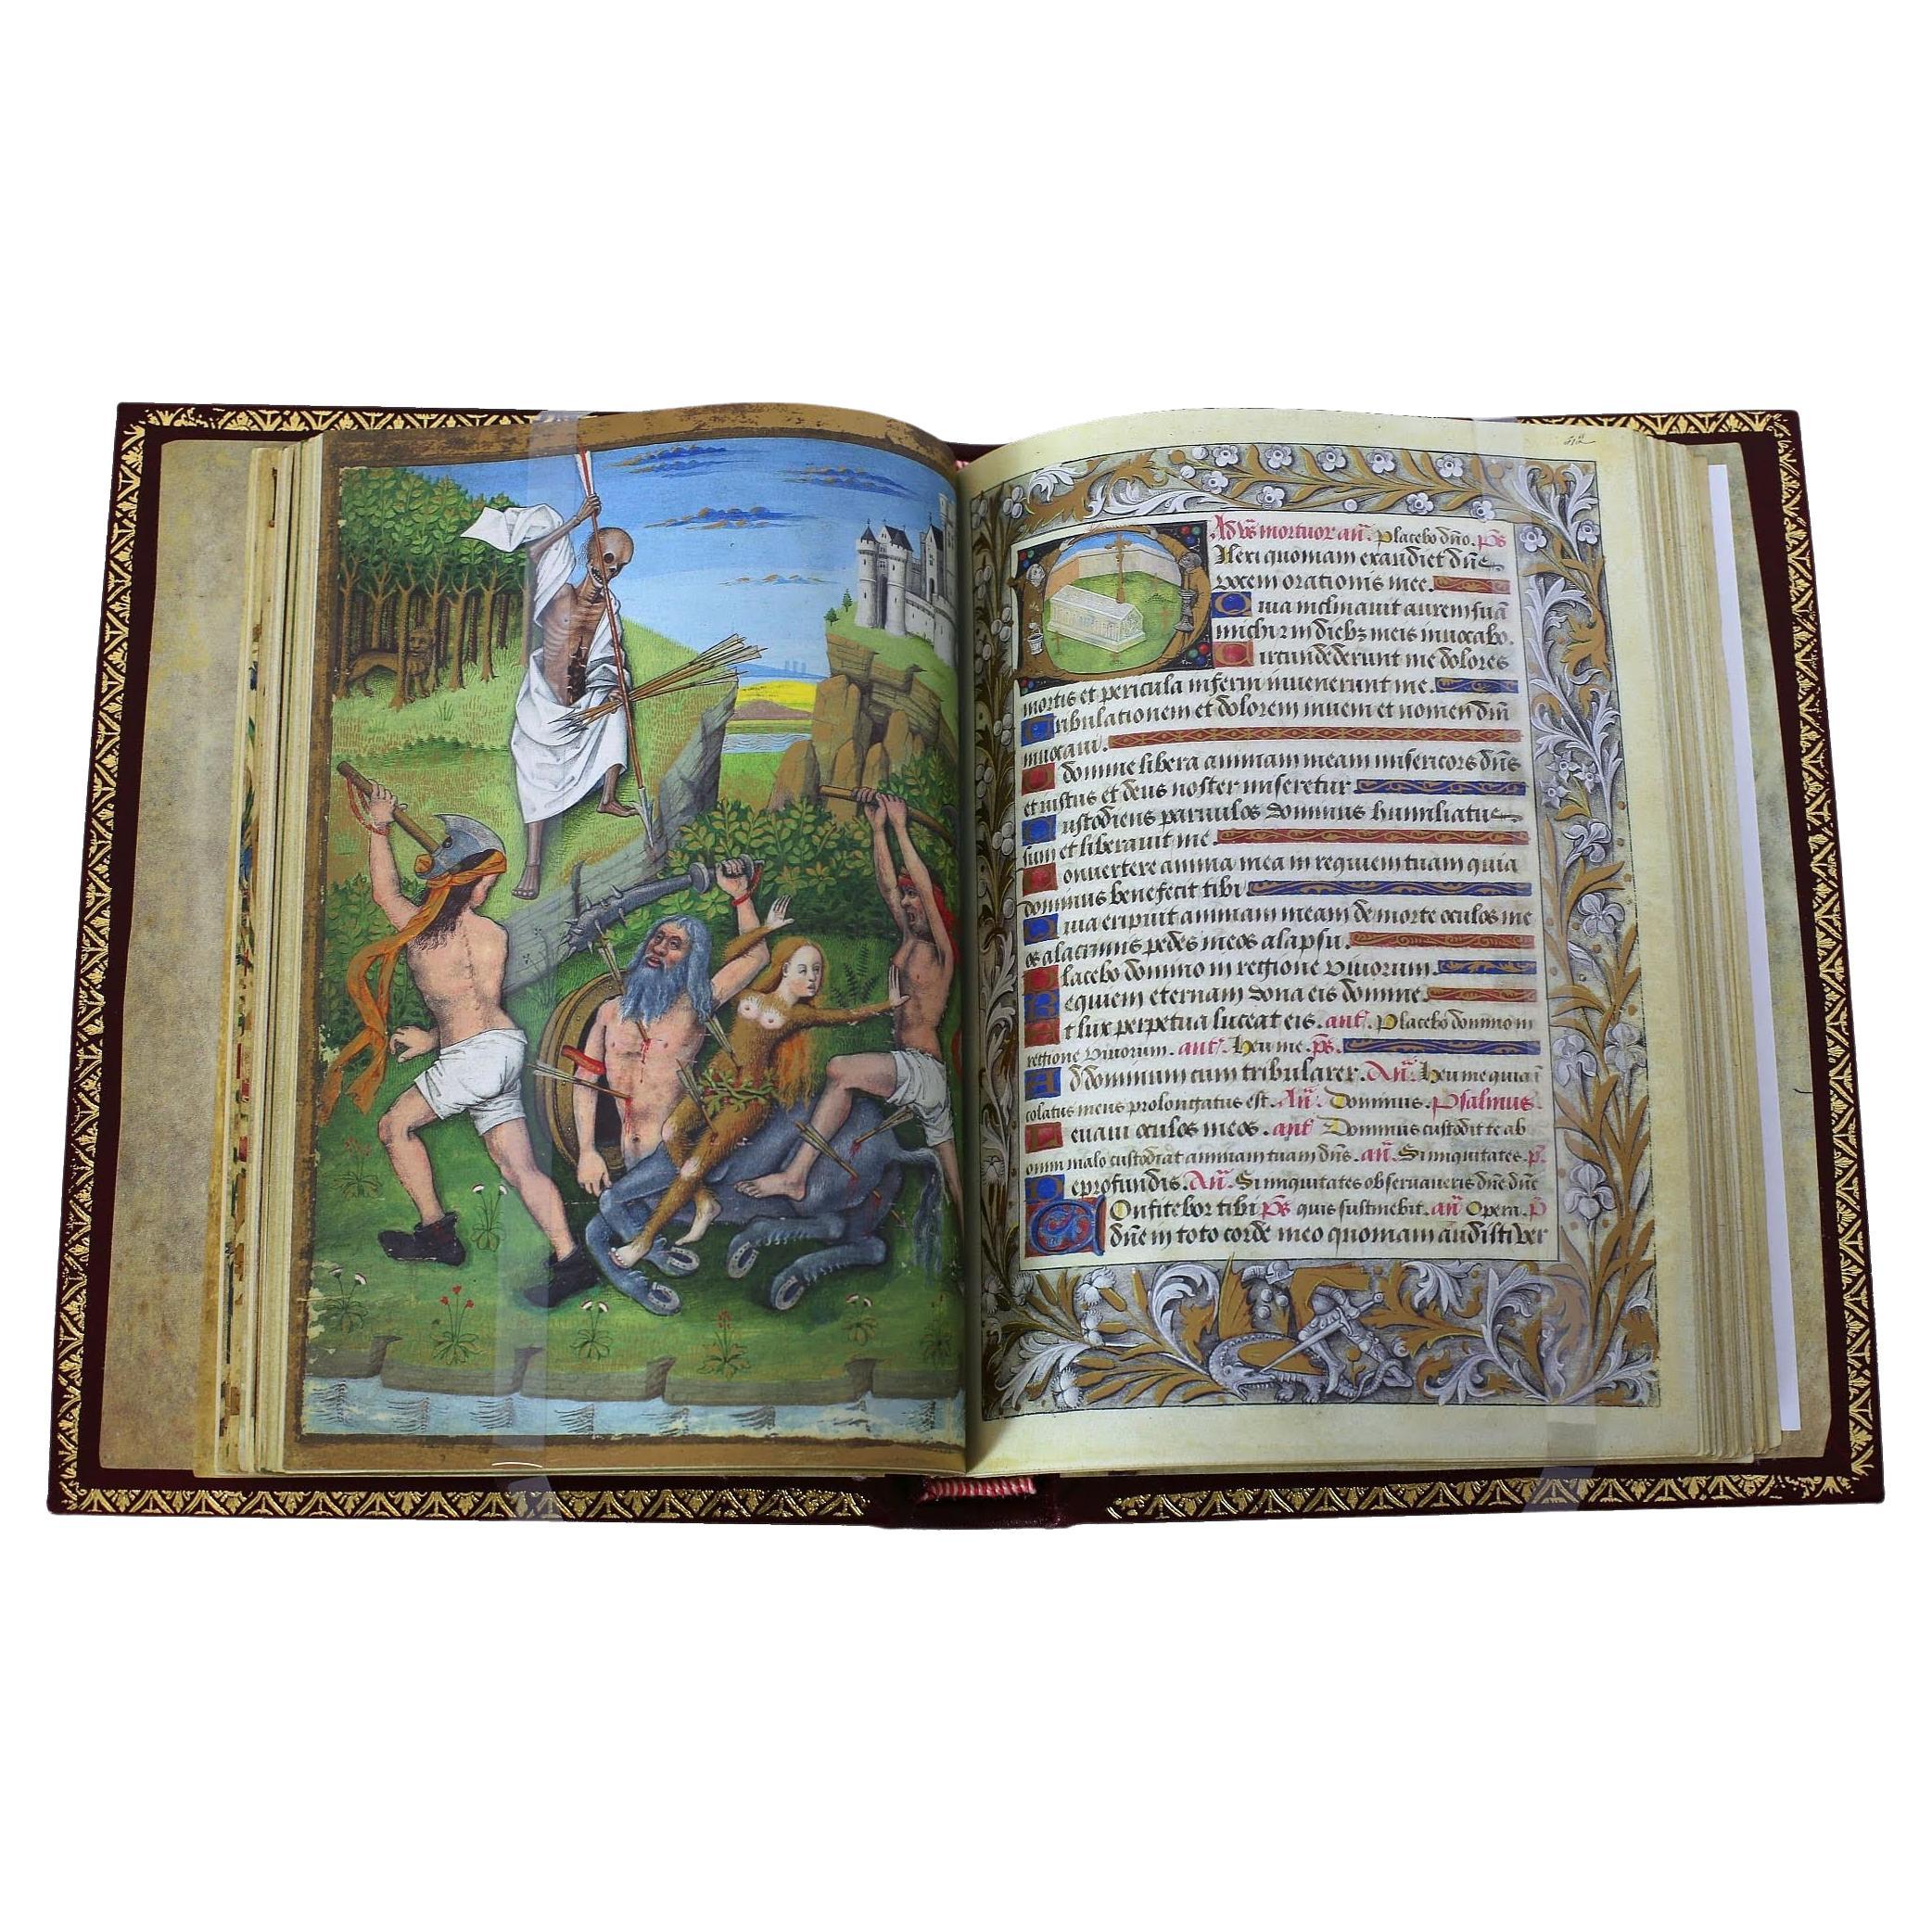 Book of Hours von Charles von Angoulême - Einmaliges Faksimile in limitierter Auflage